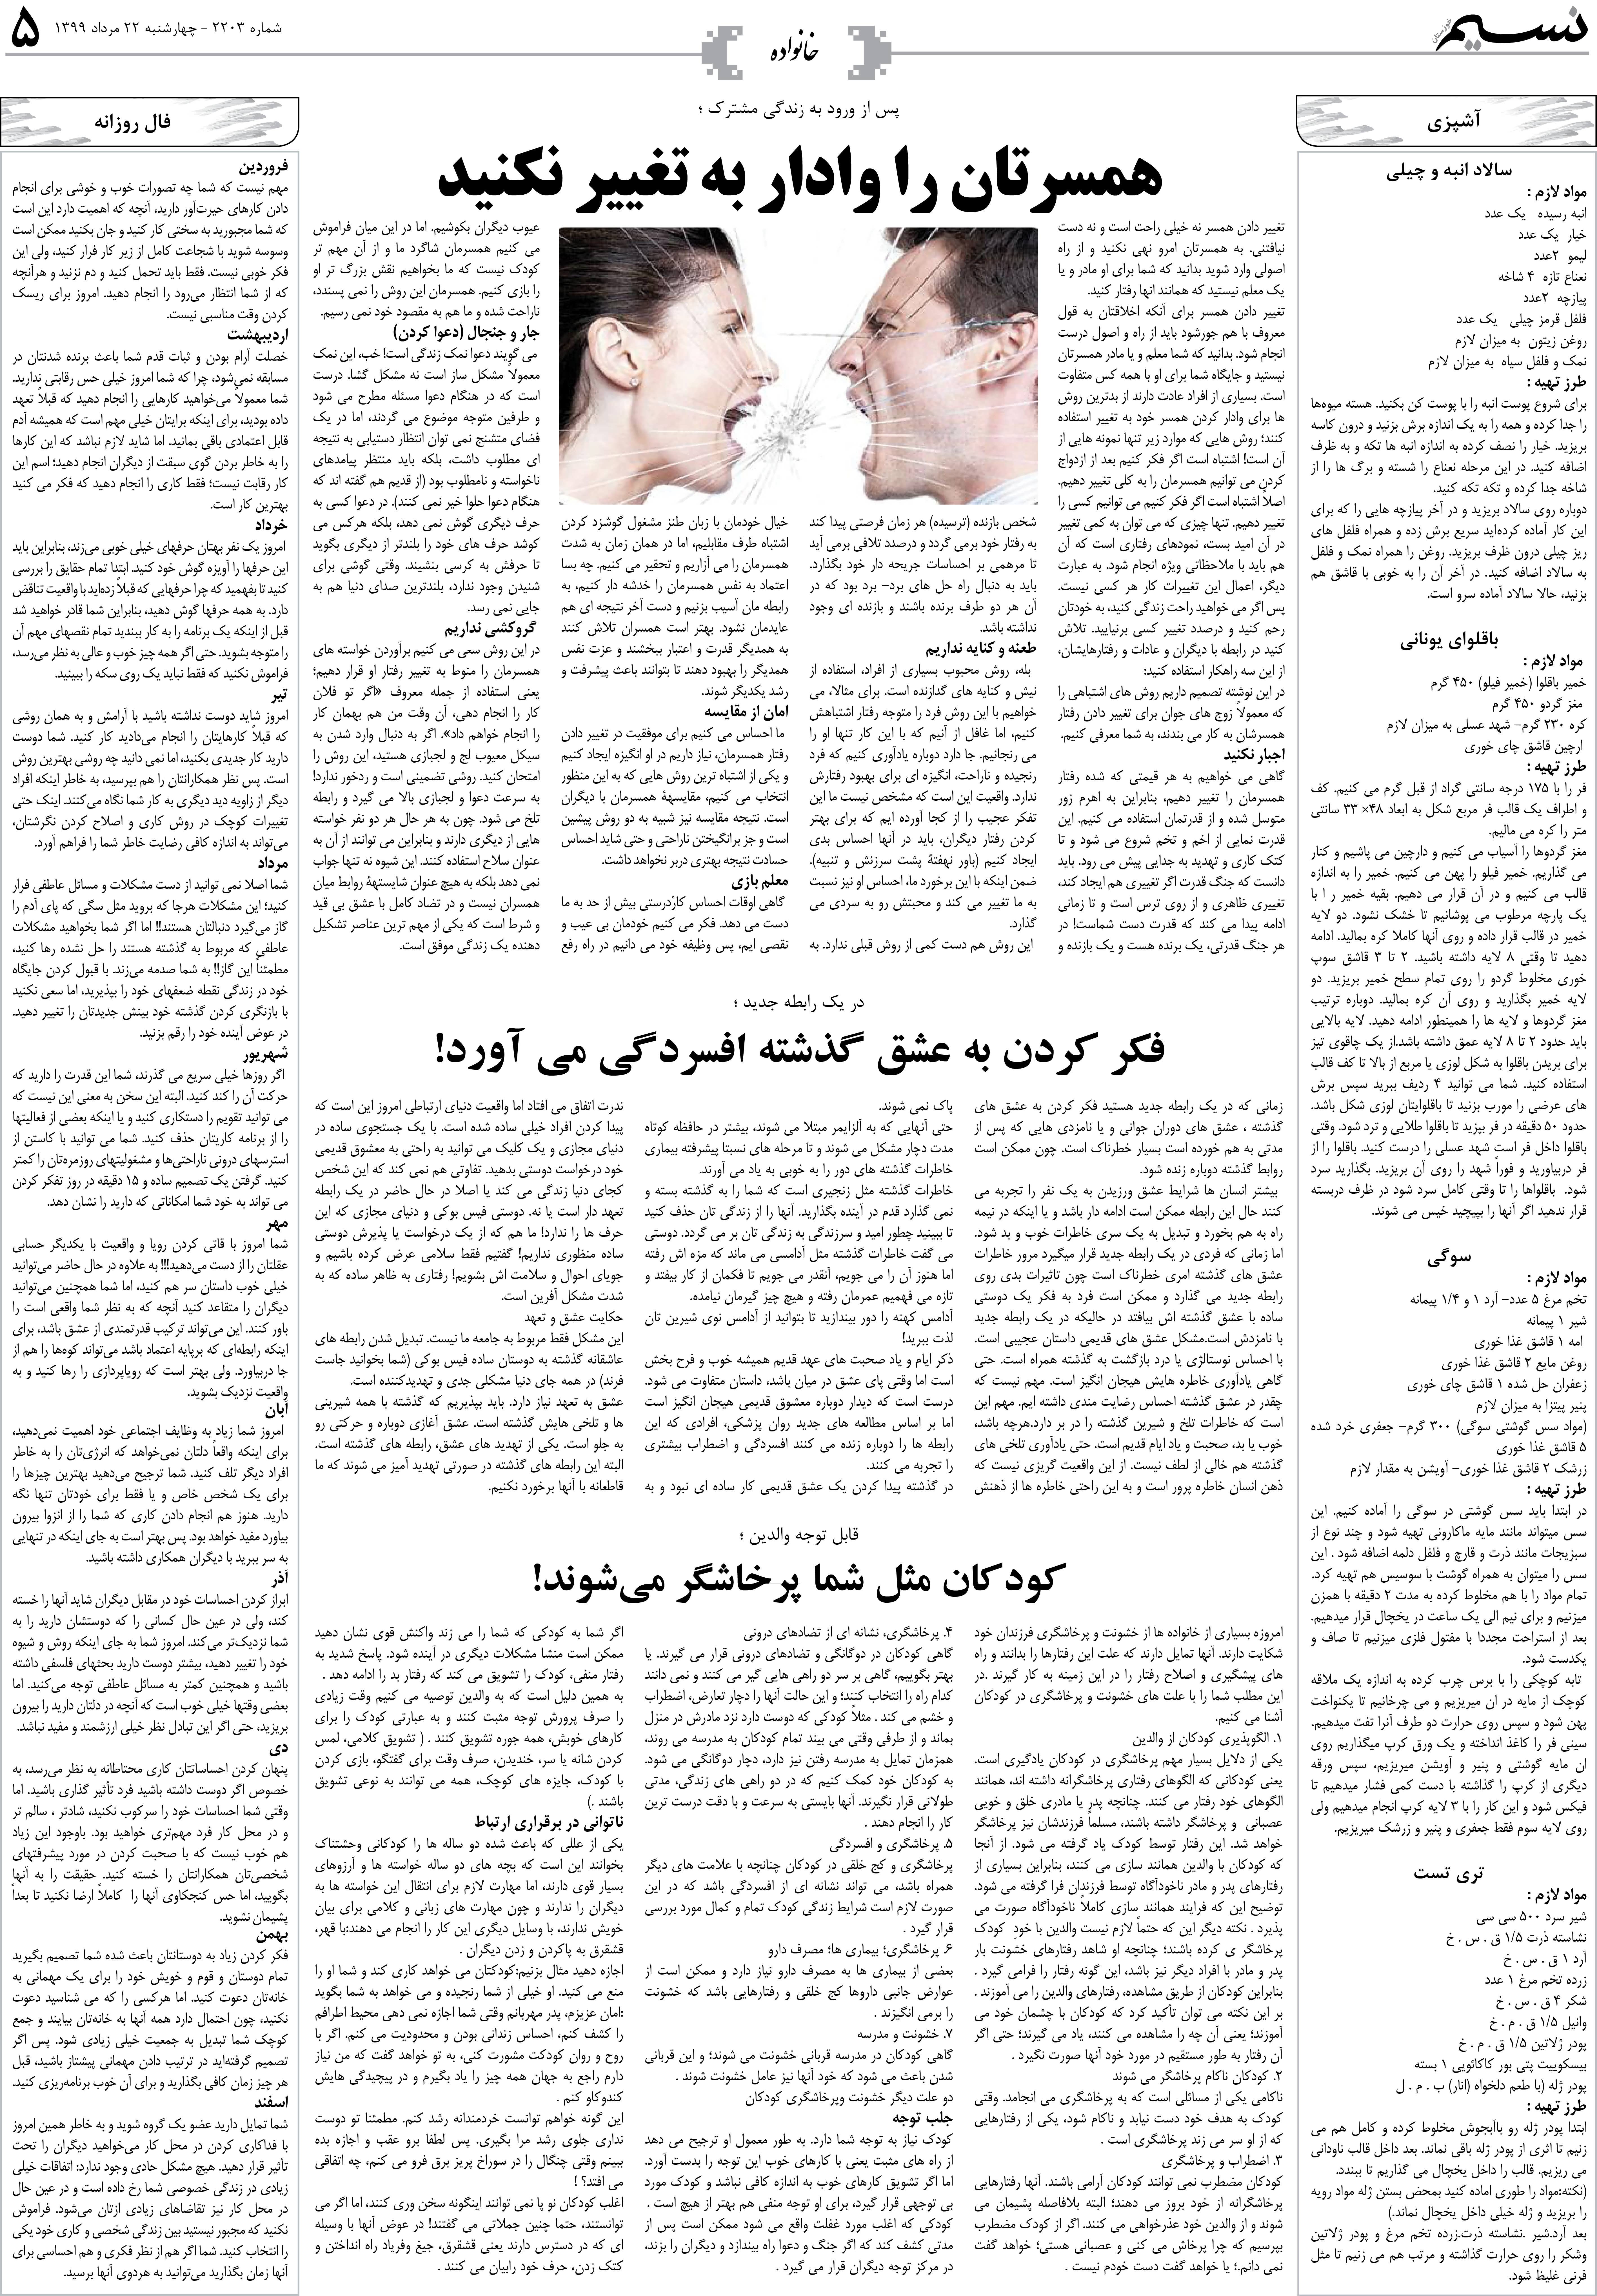 صفحه خانواده روزنامه نسیم شماره 2203